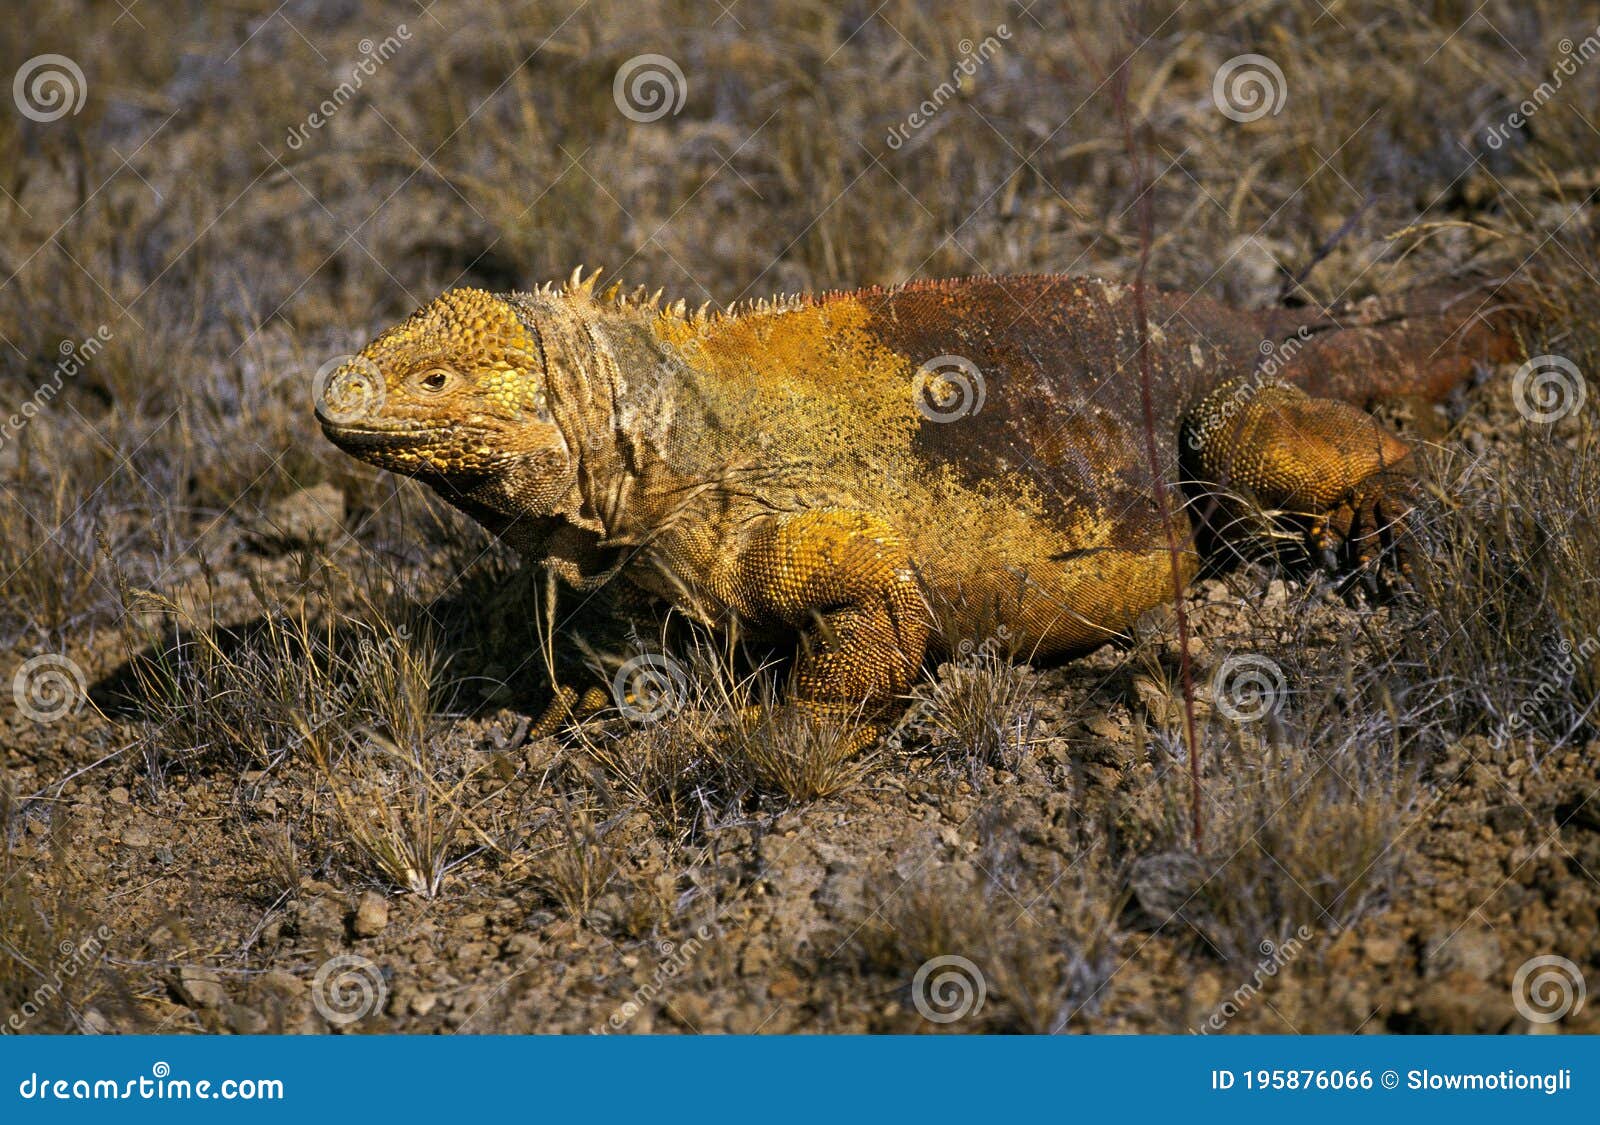 galapagos land iguana, conolophus subcristatus, adult, galapagos islands